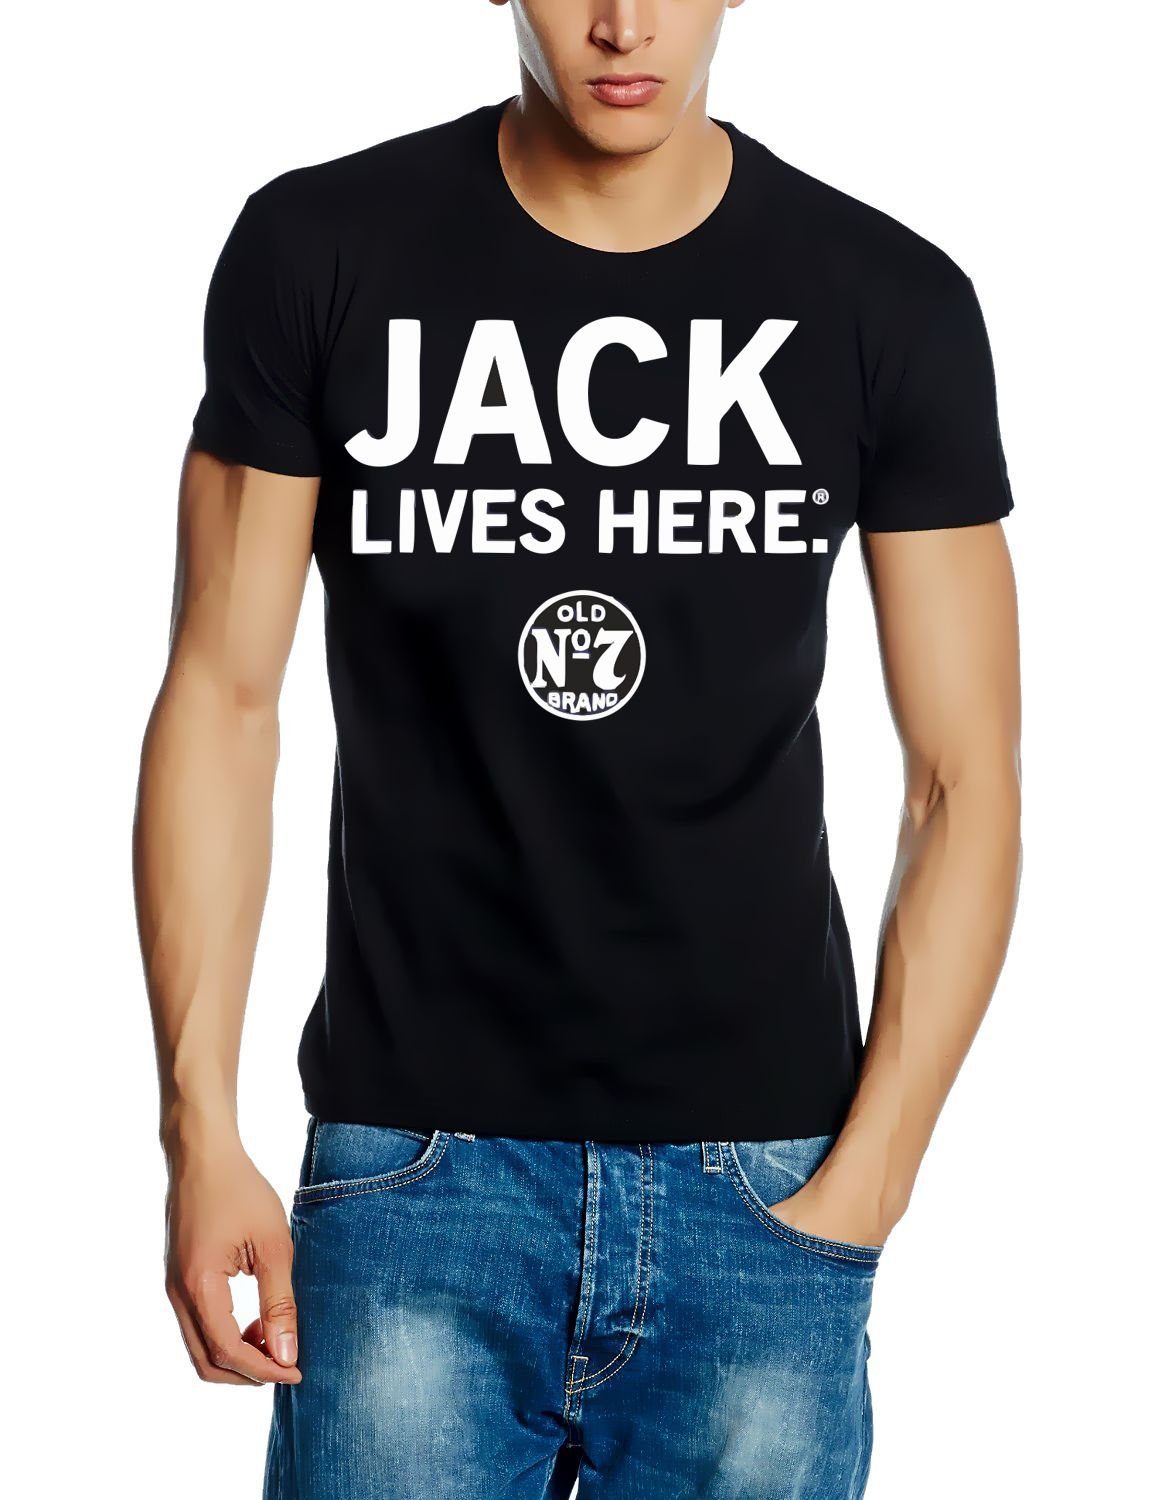 T-Shirt Black LIVES Herren JACK HERE Jack Jack Daniels Daniels Old No M S Gr. L 7 T-Shirt